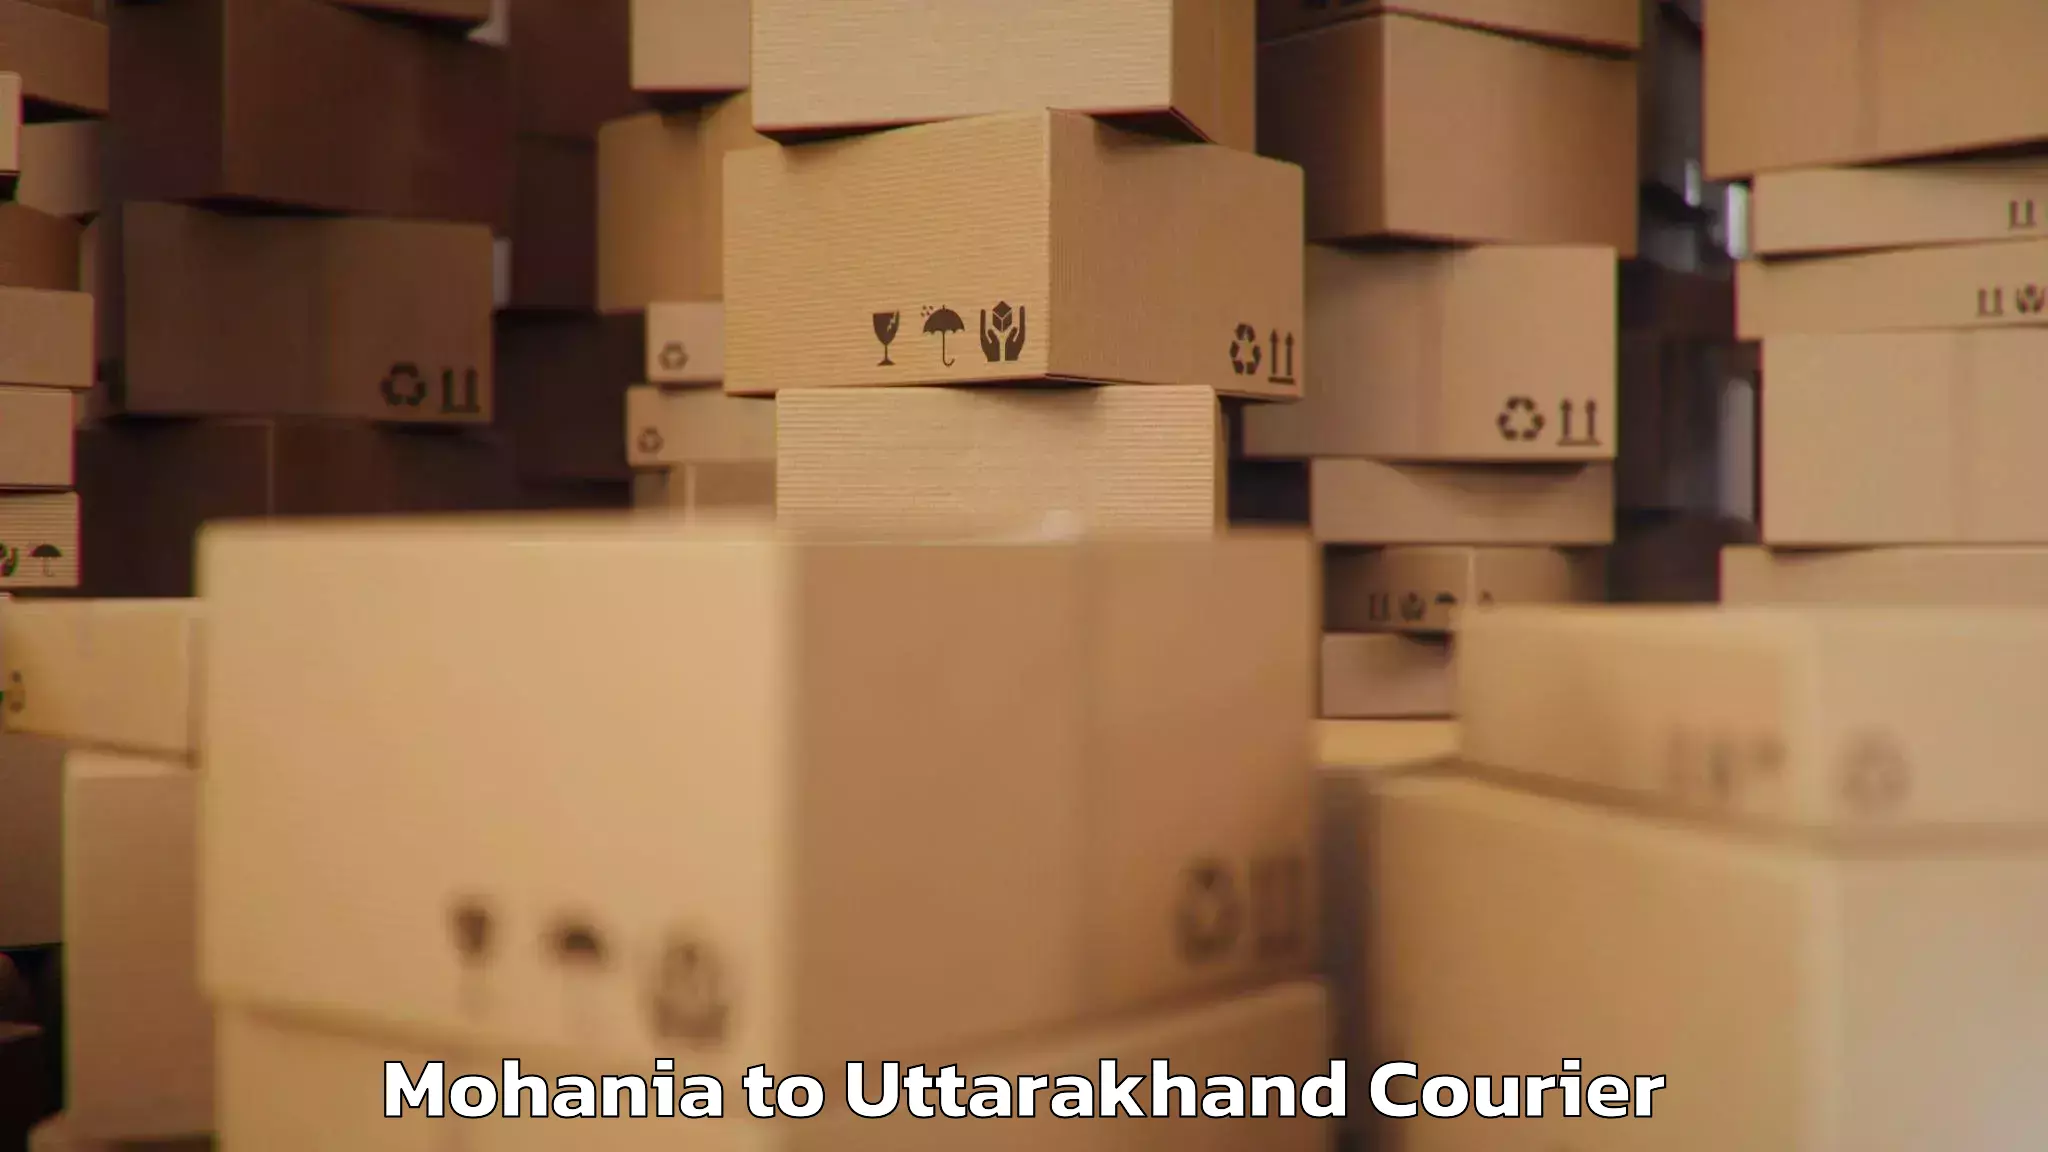 Baggage transport management Mohania to Uttarakhand